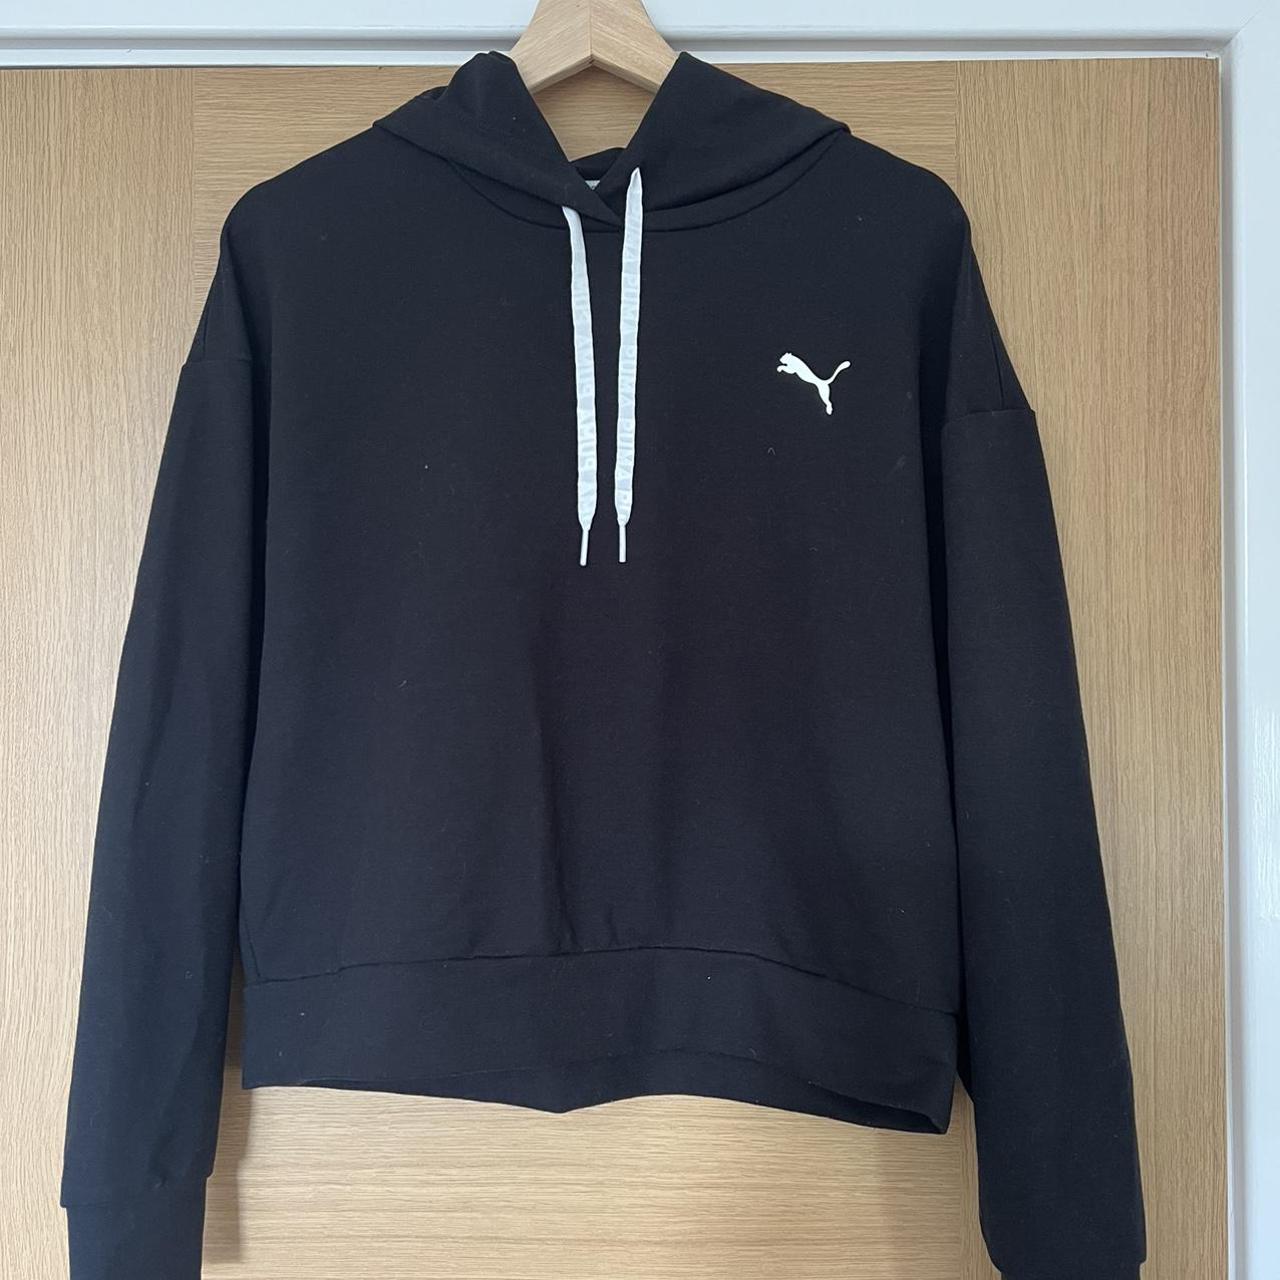 Puma black dry fit hoodie - Depop